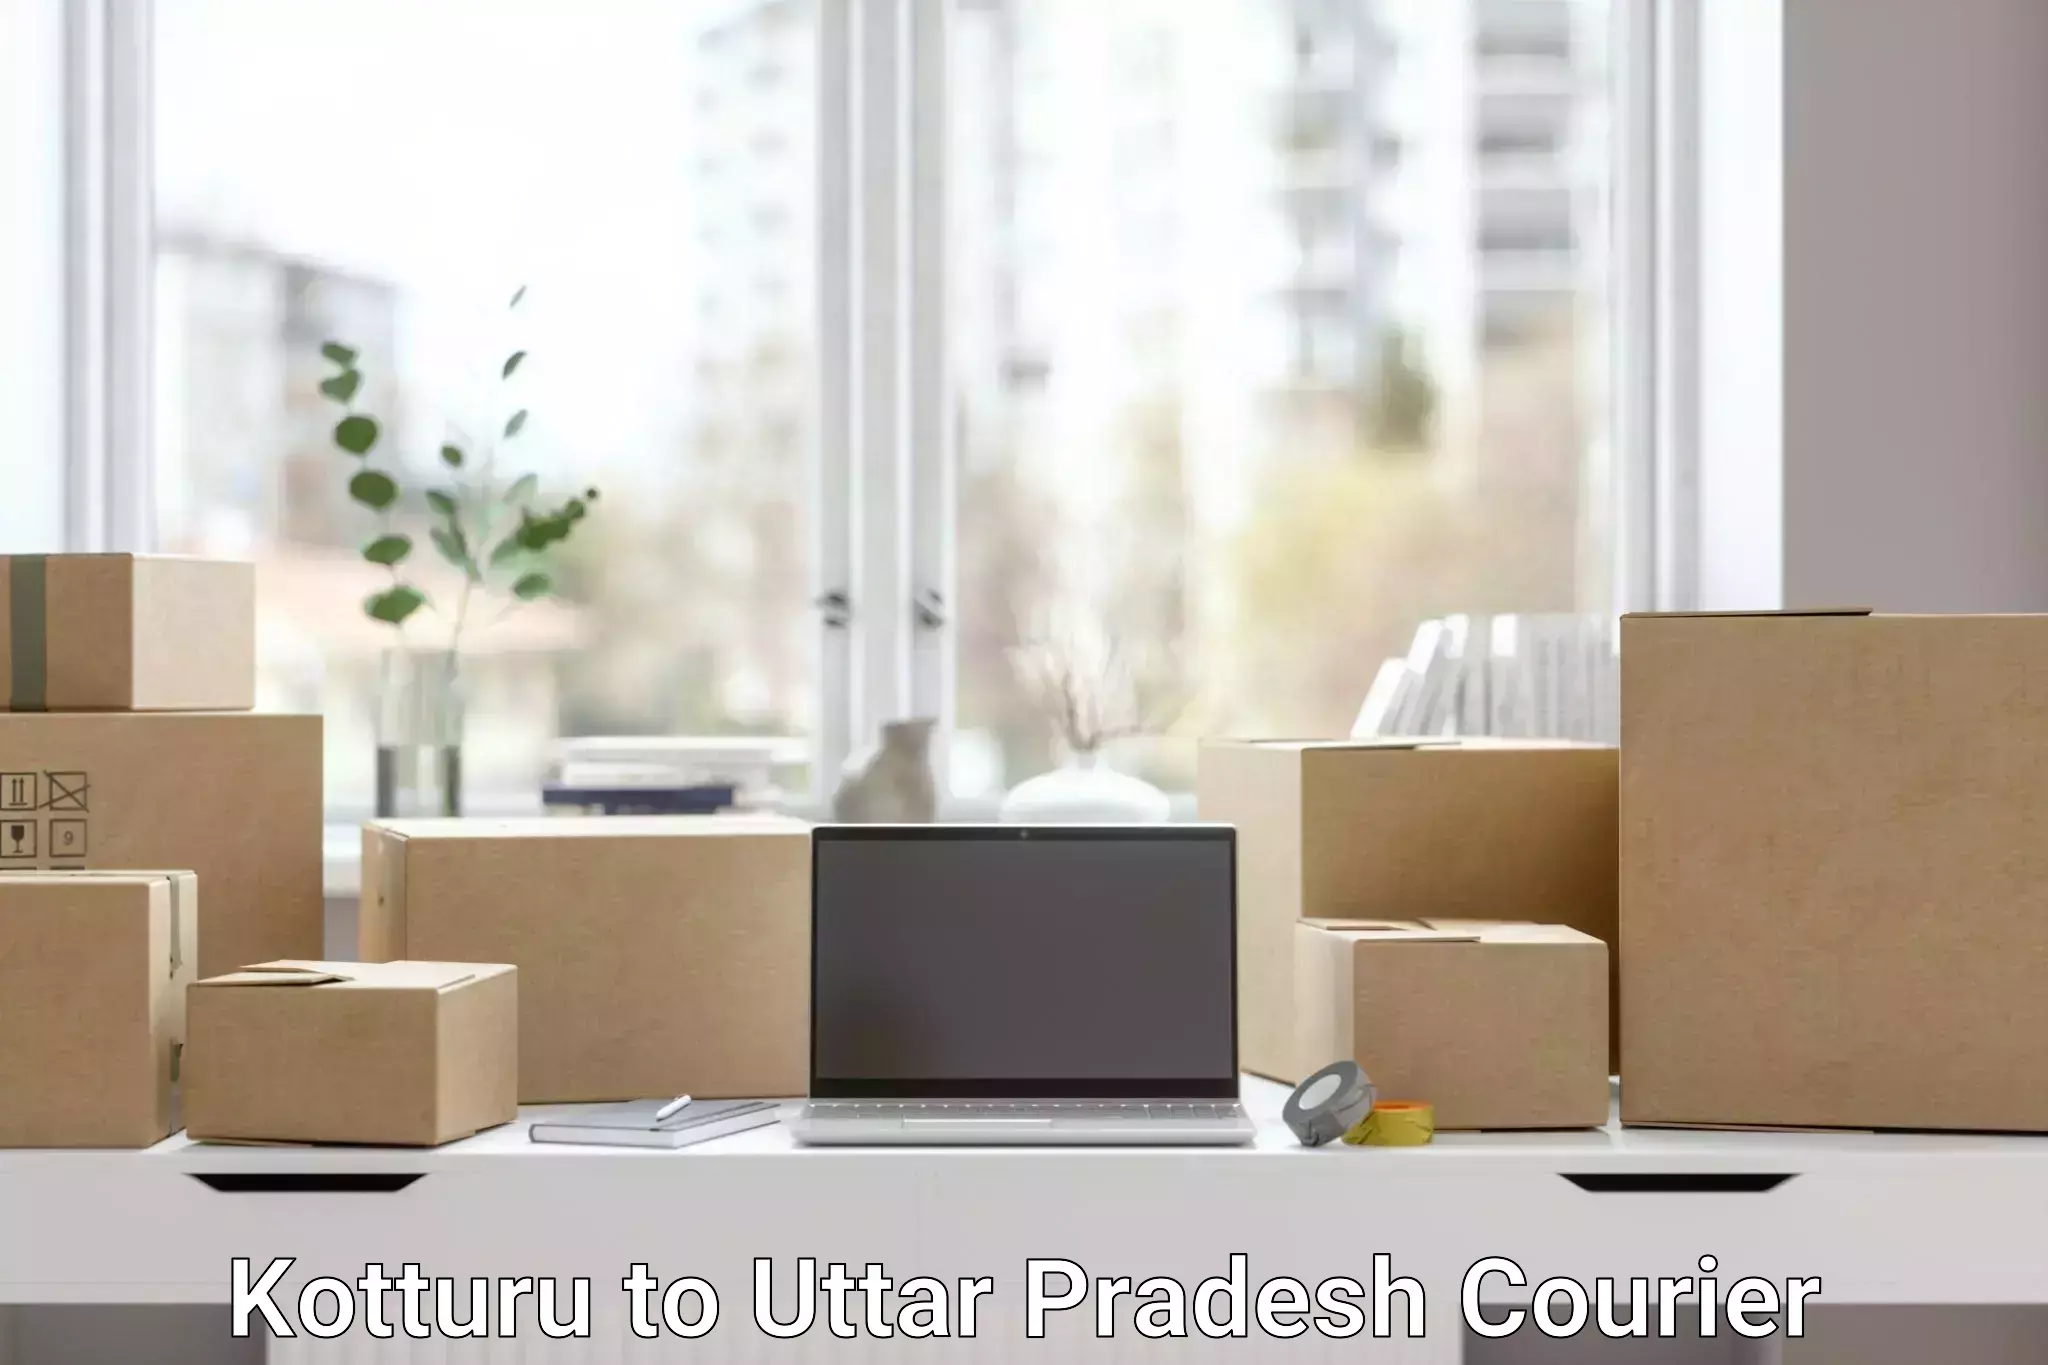 Custom courier packaging Kotturu to Milak